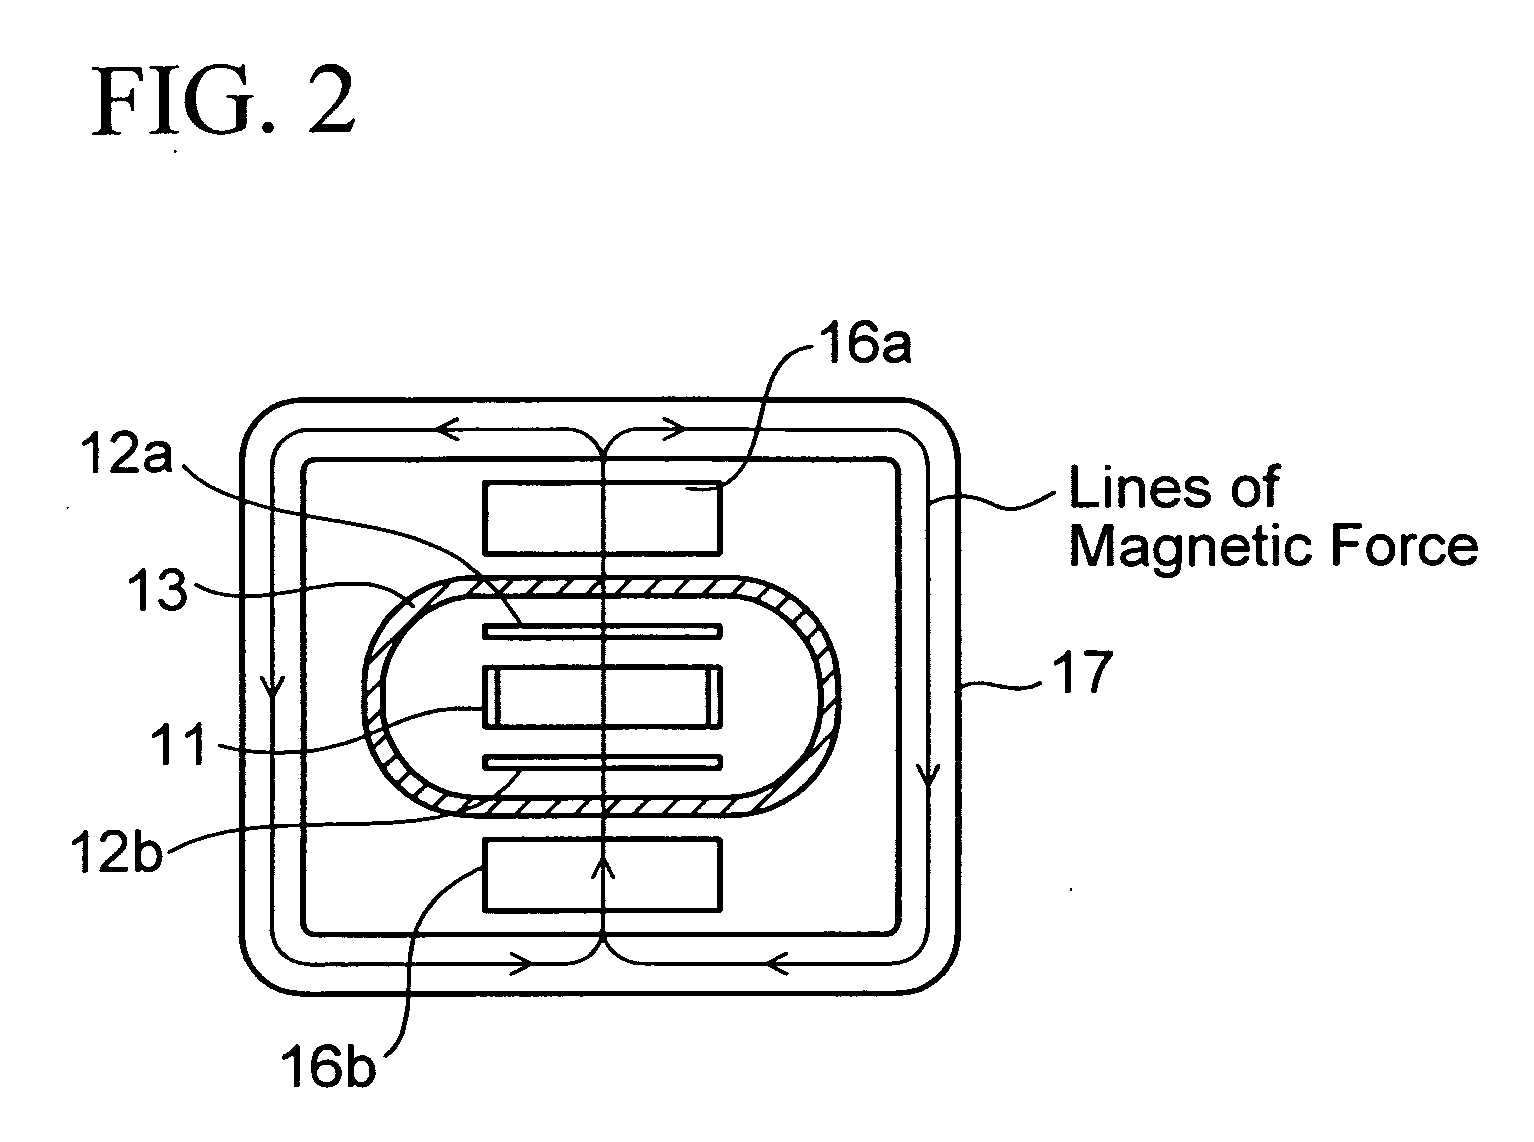 Ionization vacuum device